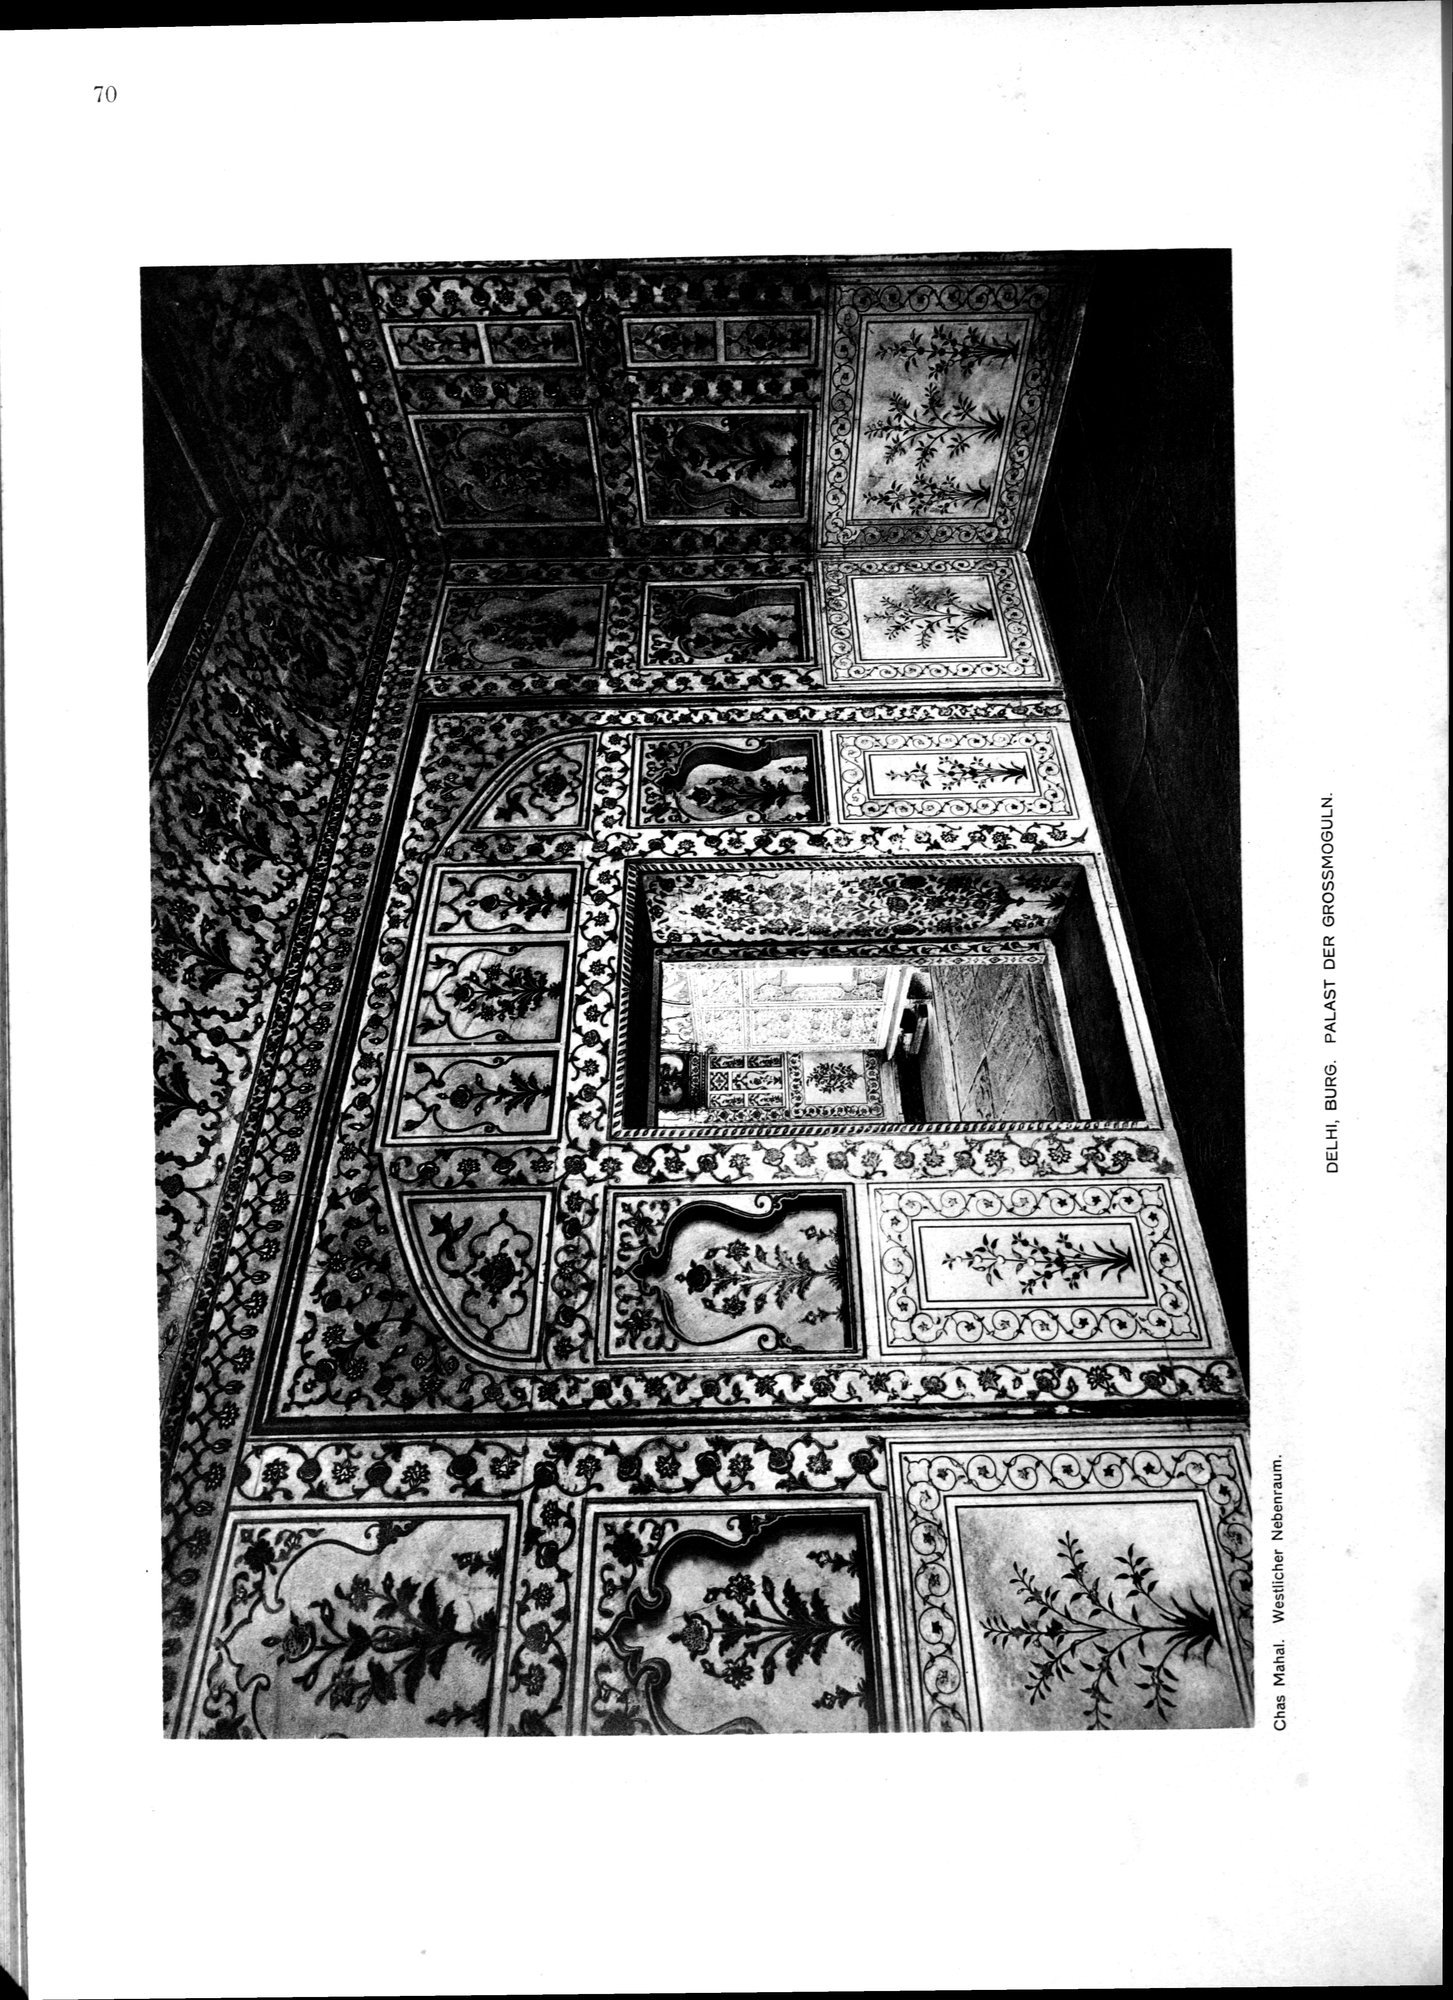 Indische Palaste und Wohnhauser : vol.1 / Page 186 (Grayscale High Resolution Image)